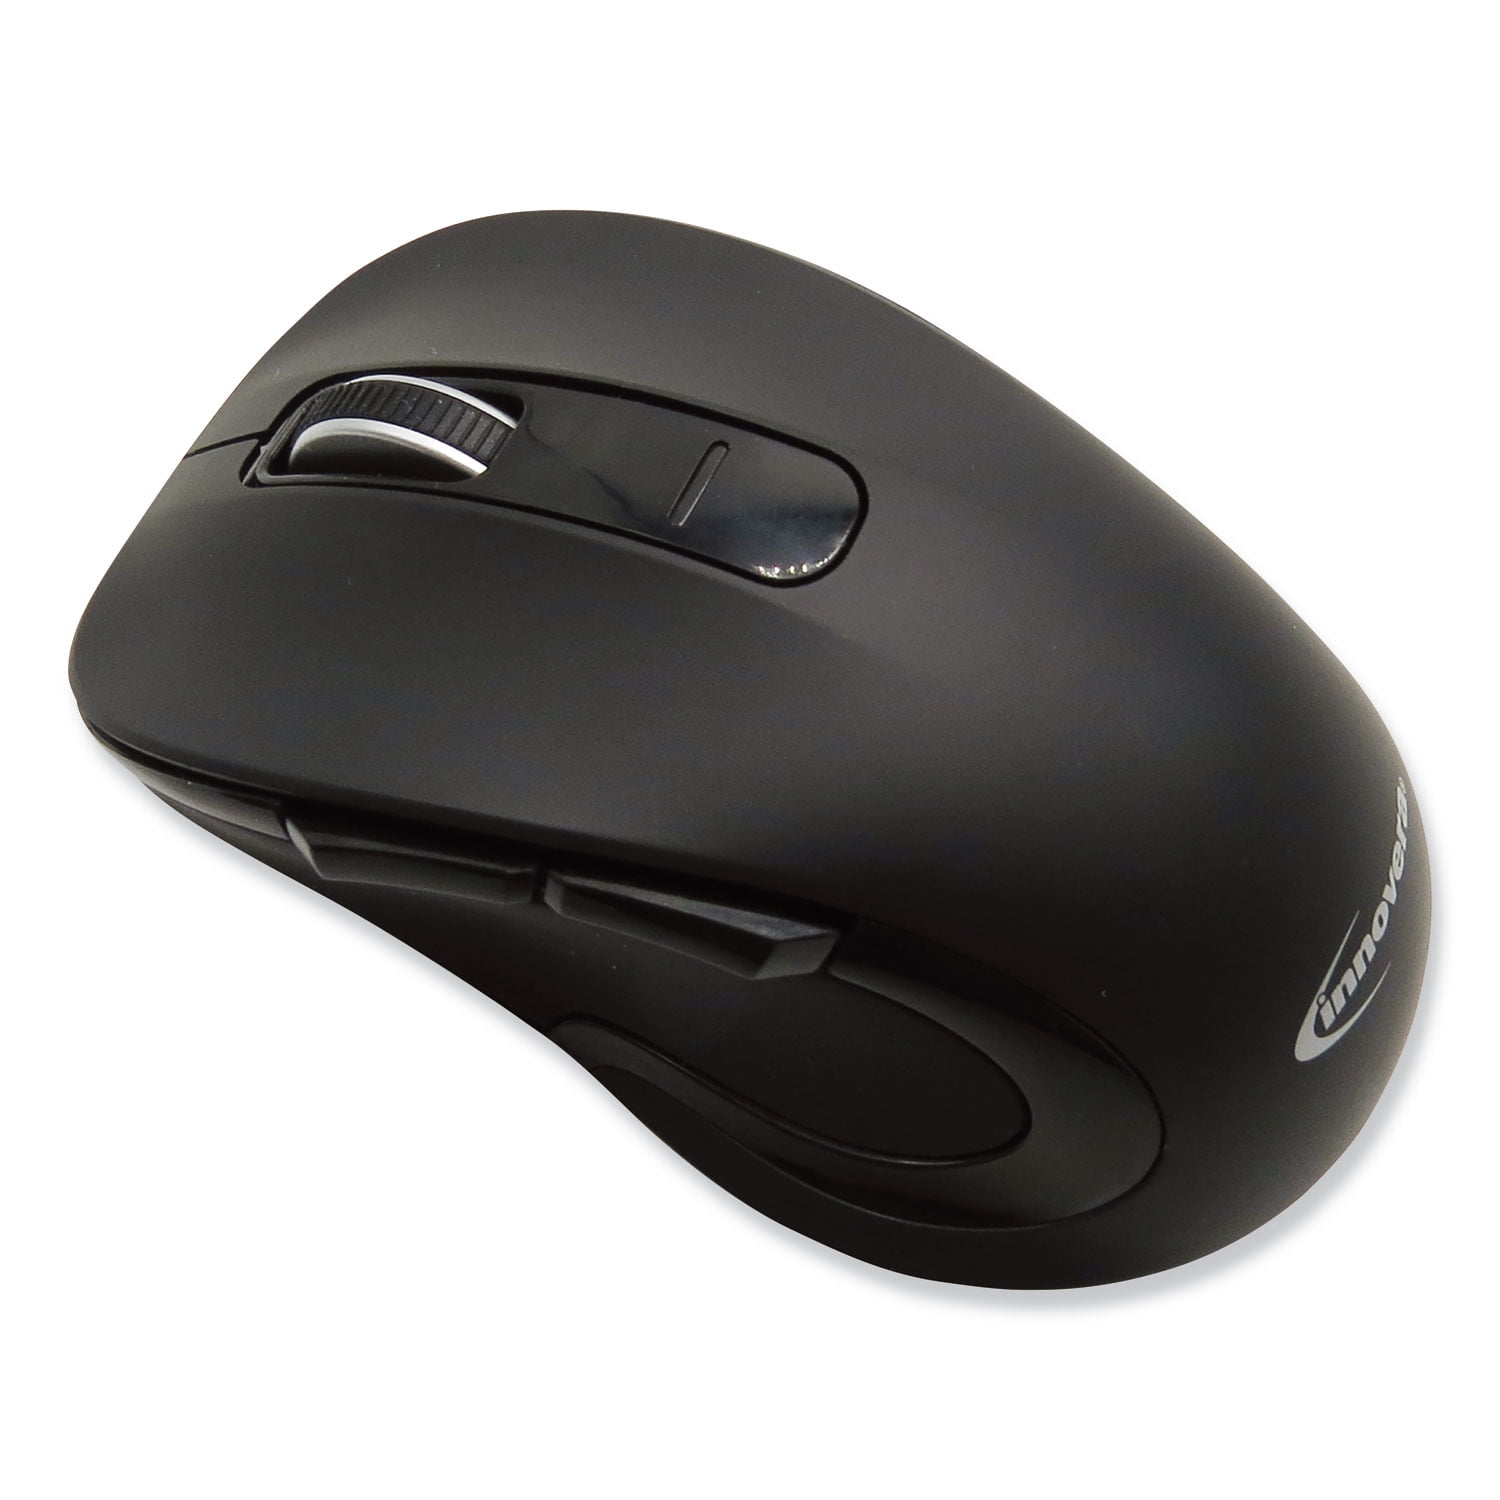 Какая беспроводная мышь лучше. Мышка Wireless Optical Mouse. 2.4GHZ Wireless Optical Mouse. Мышка Intro 2.4GHZ Wireless. Optical Mouse 3600 вз.